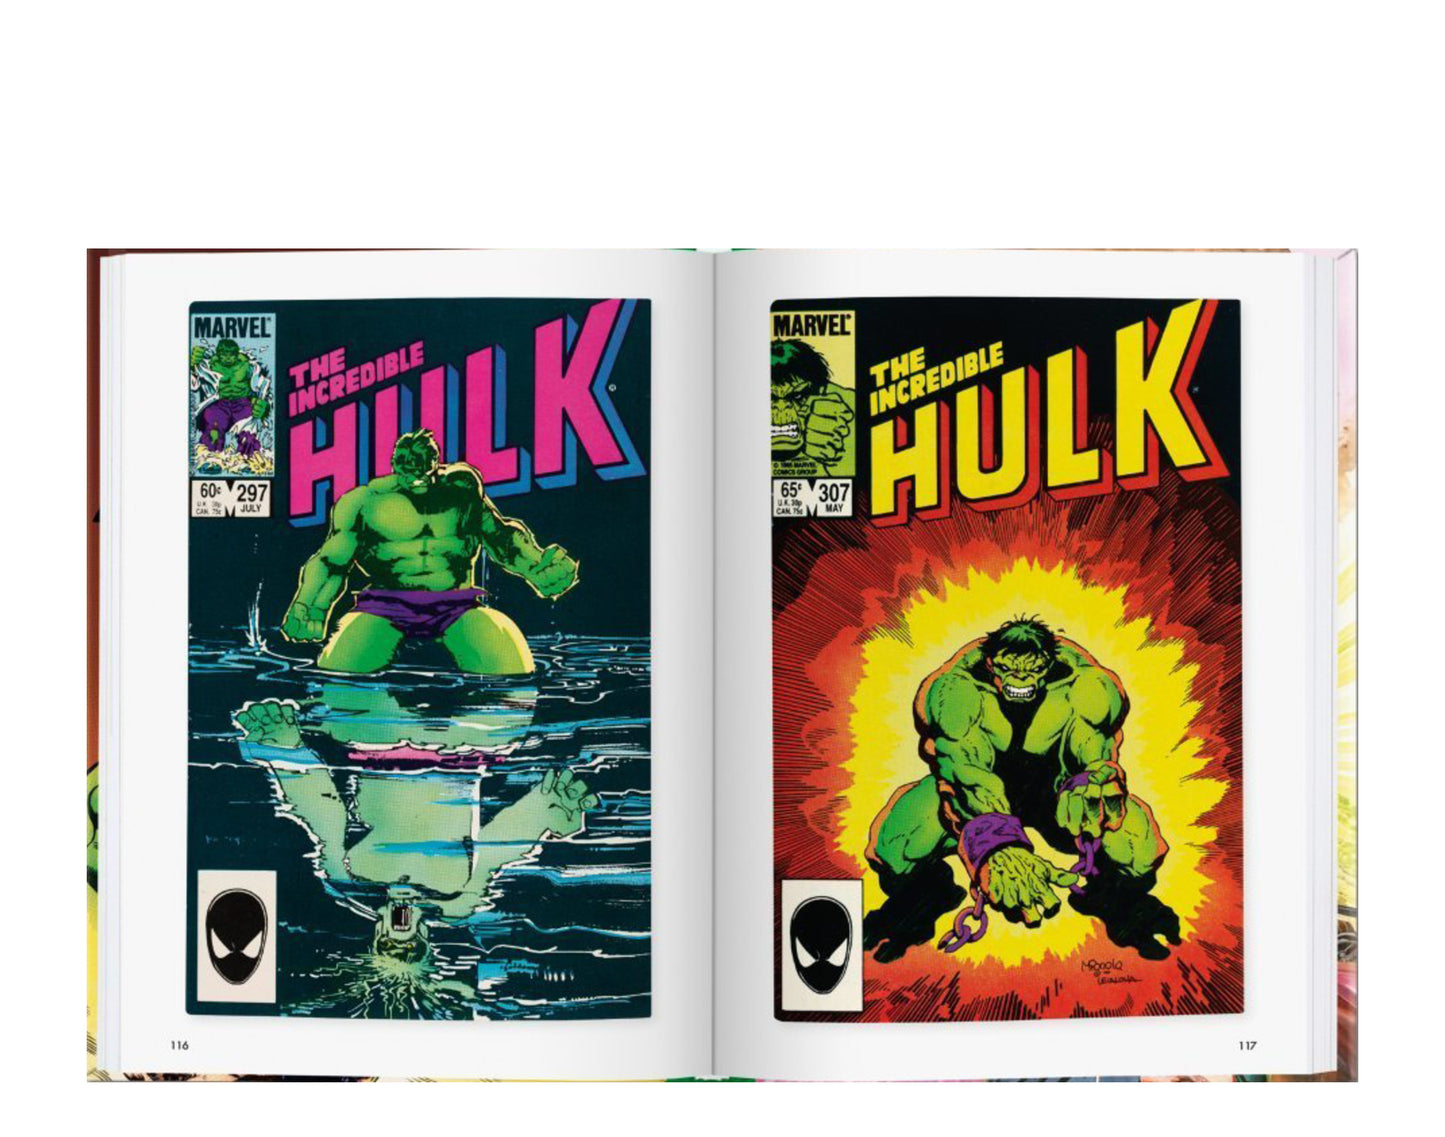 Taschen Books - The Little Book of Hulk Flexicover Book